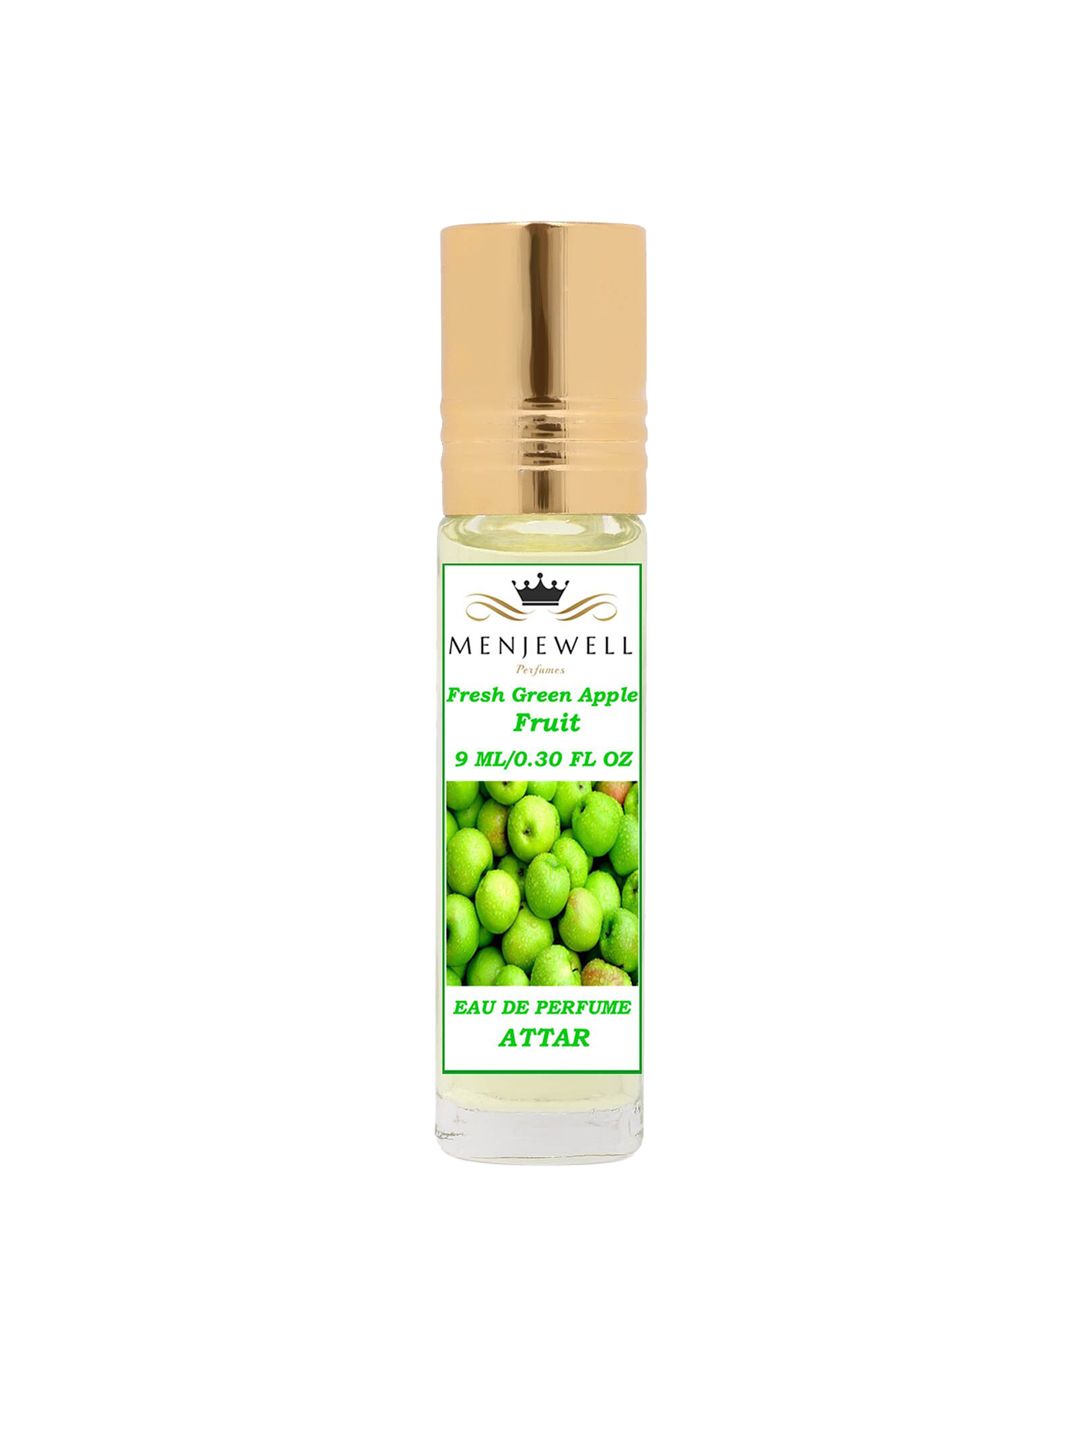 Menjewell Fresh Green Apple Fruit Fragrance 9 ml Price in India